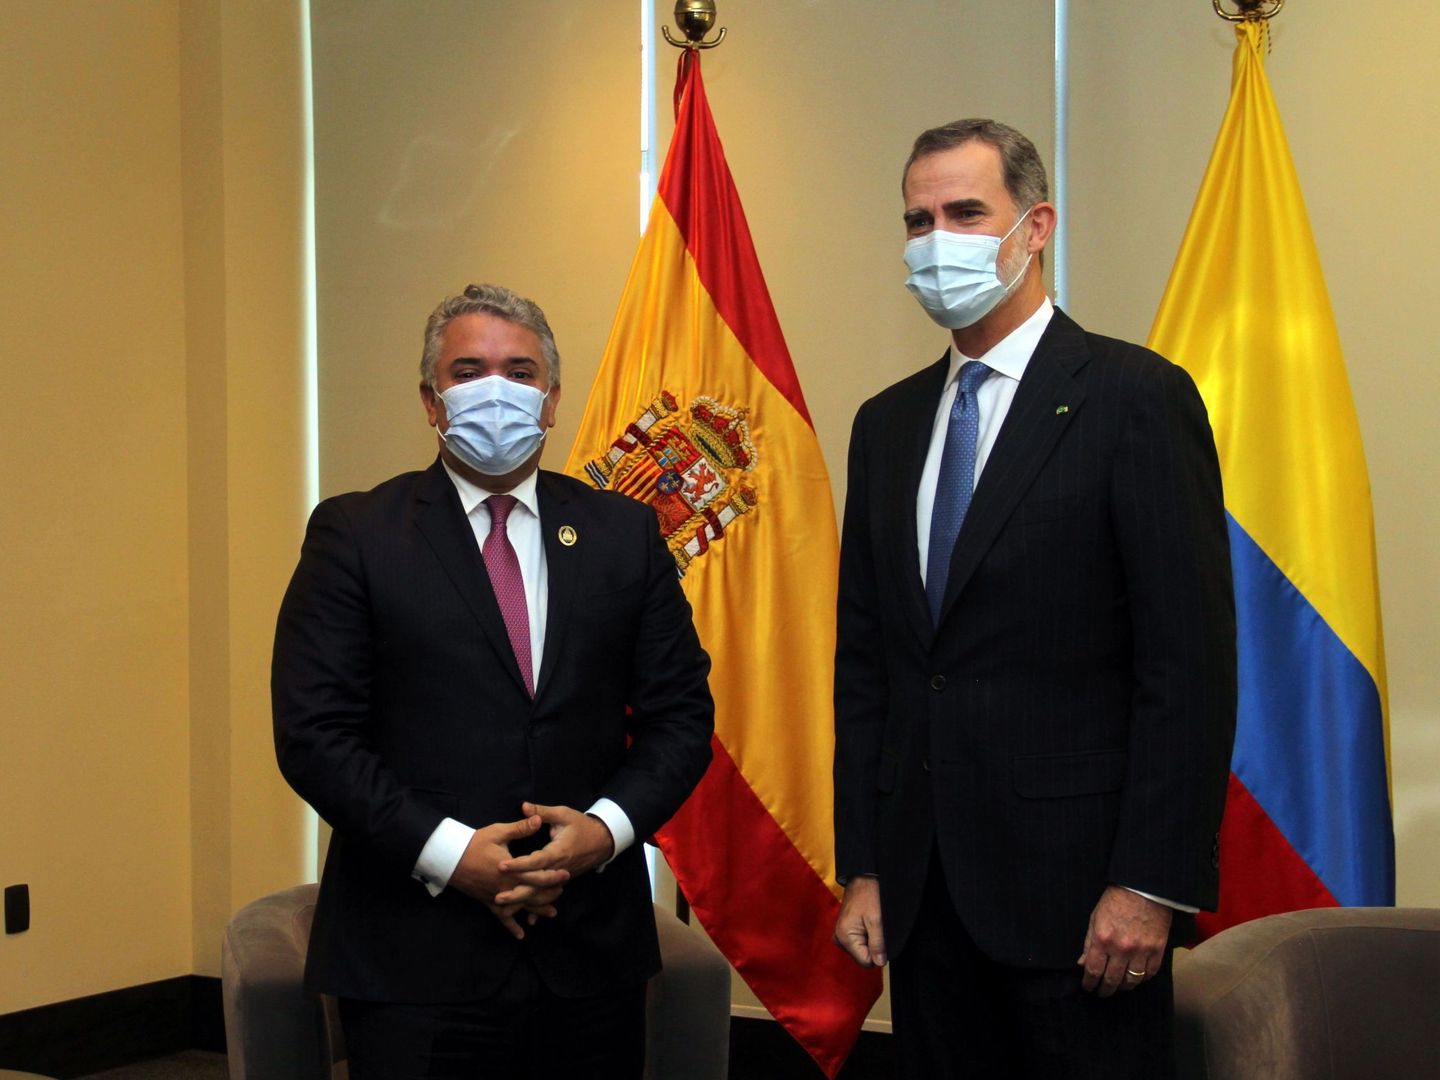 El rey Felipe VI de España posa con el presidente de Colombia, Iván Duque. (EFE)